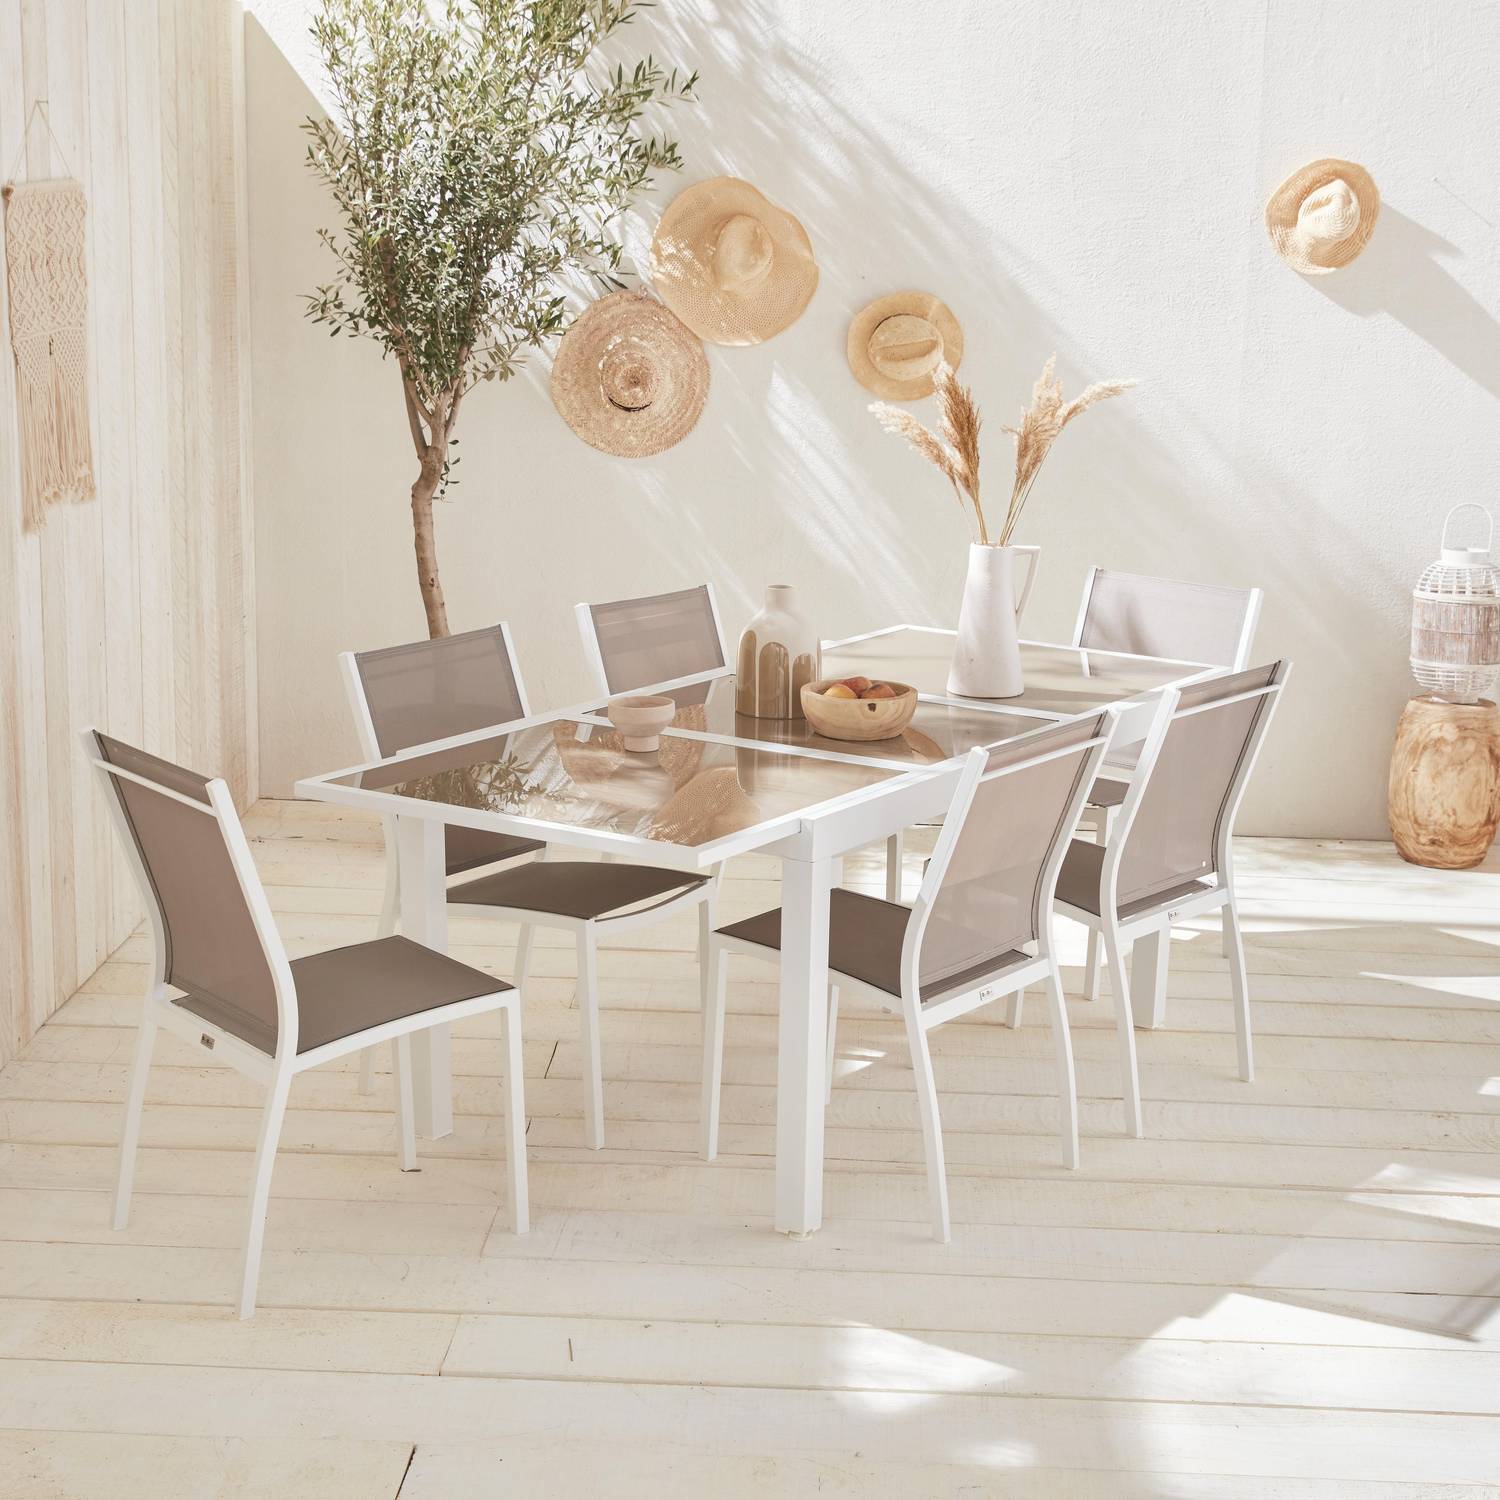 2er Set Gartenstühle - ORLANDO Farbe Weiß / Taupe - Gestell aus Aluminum, Sitz aus Textilene, stapelbar Photo4